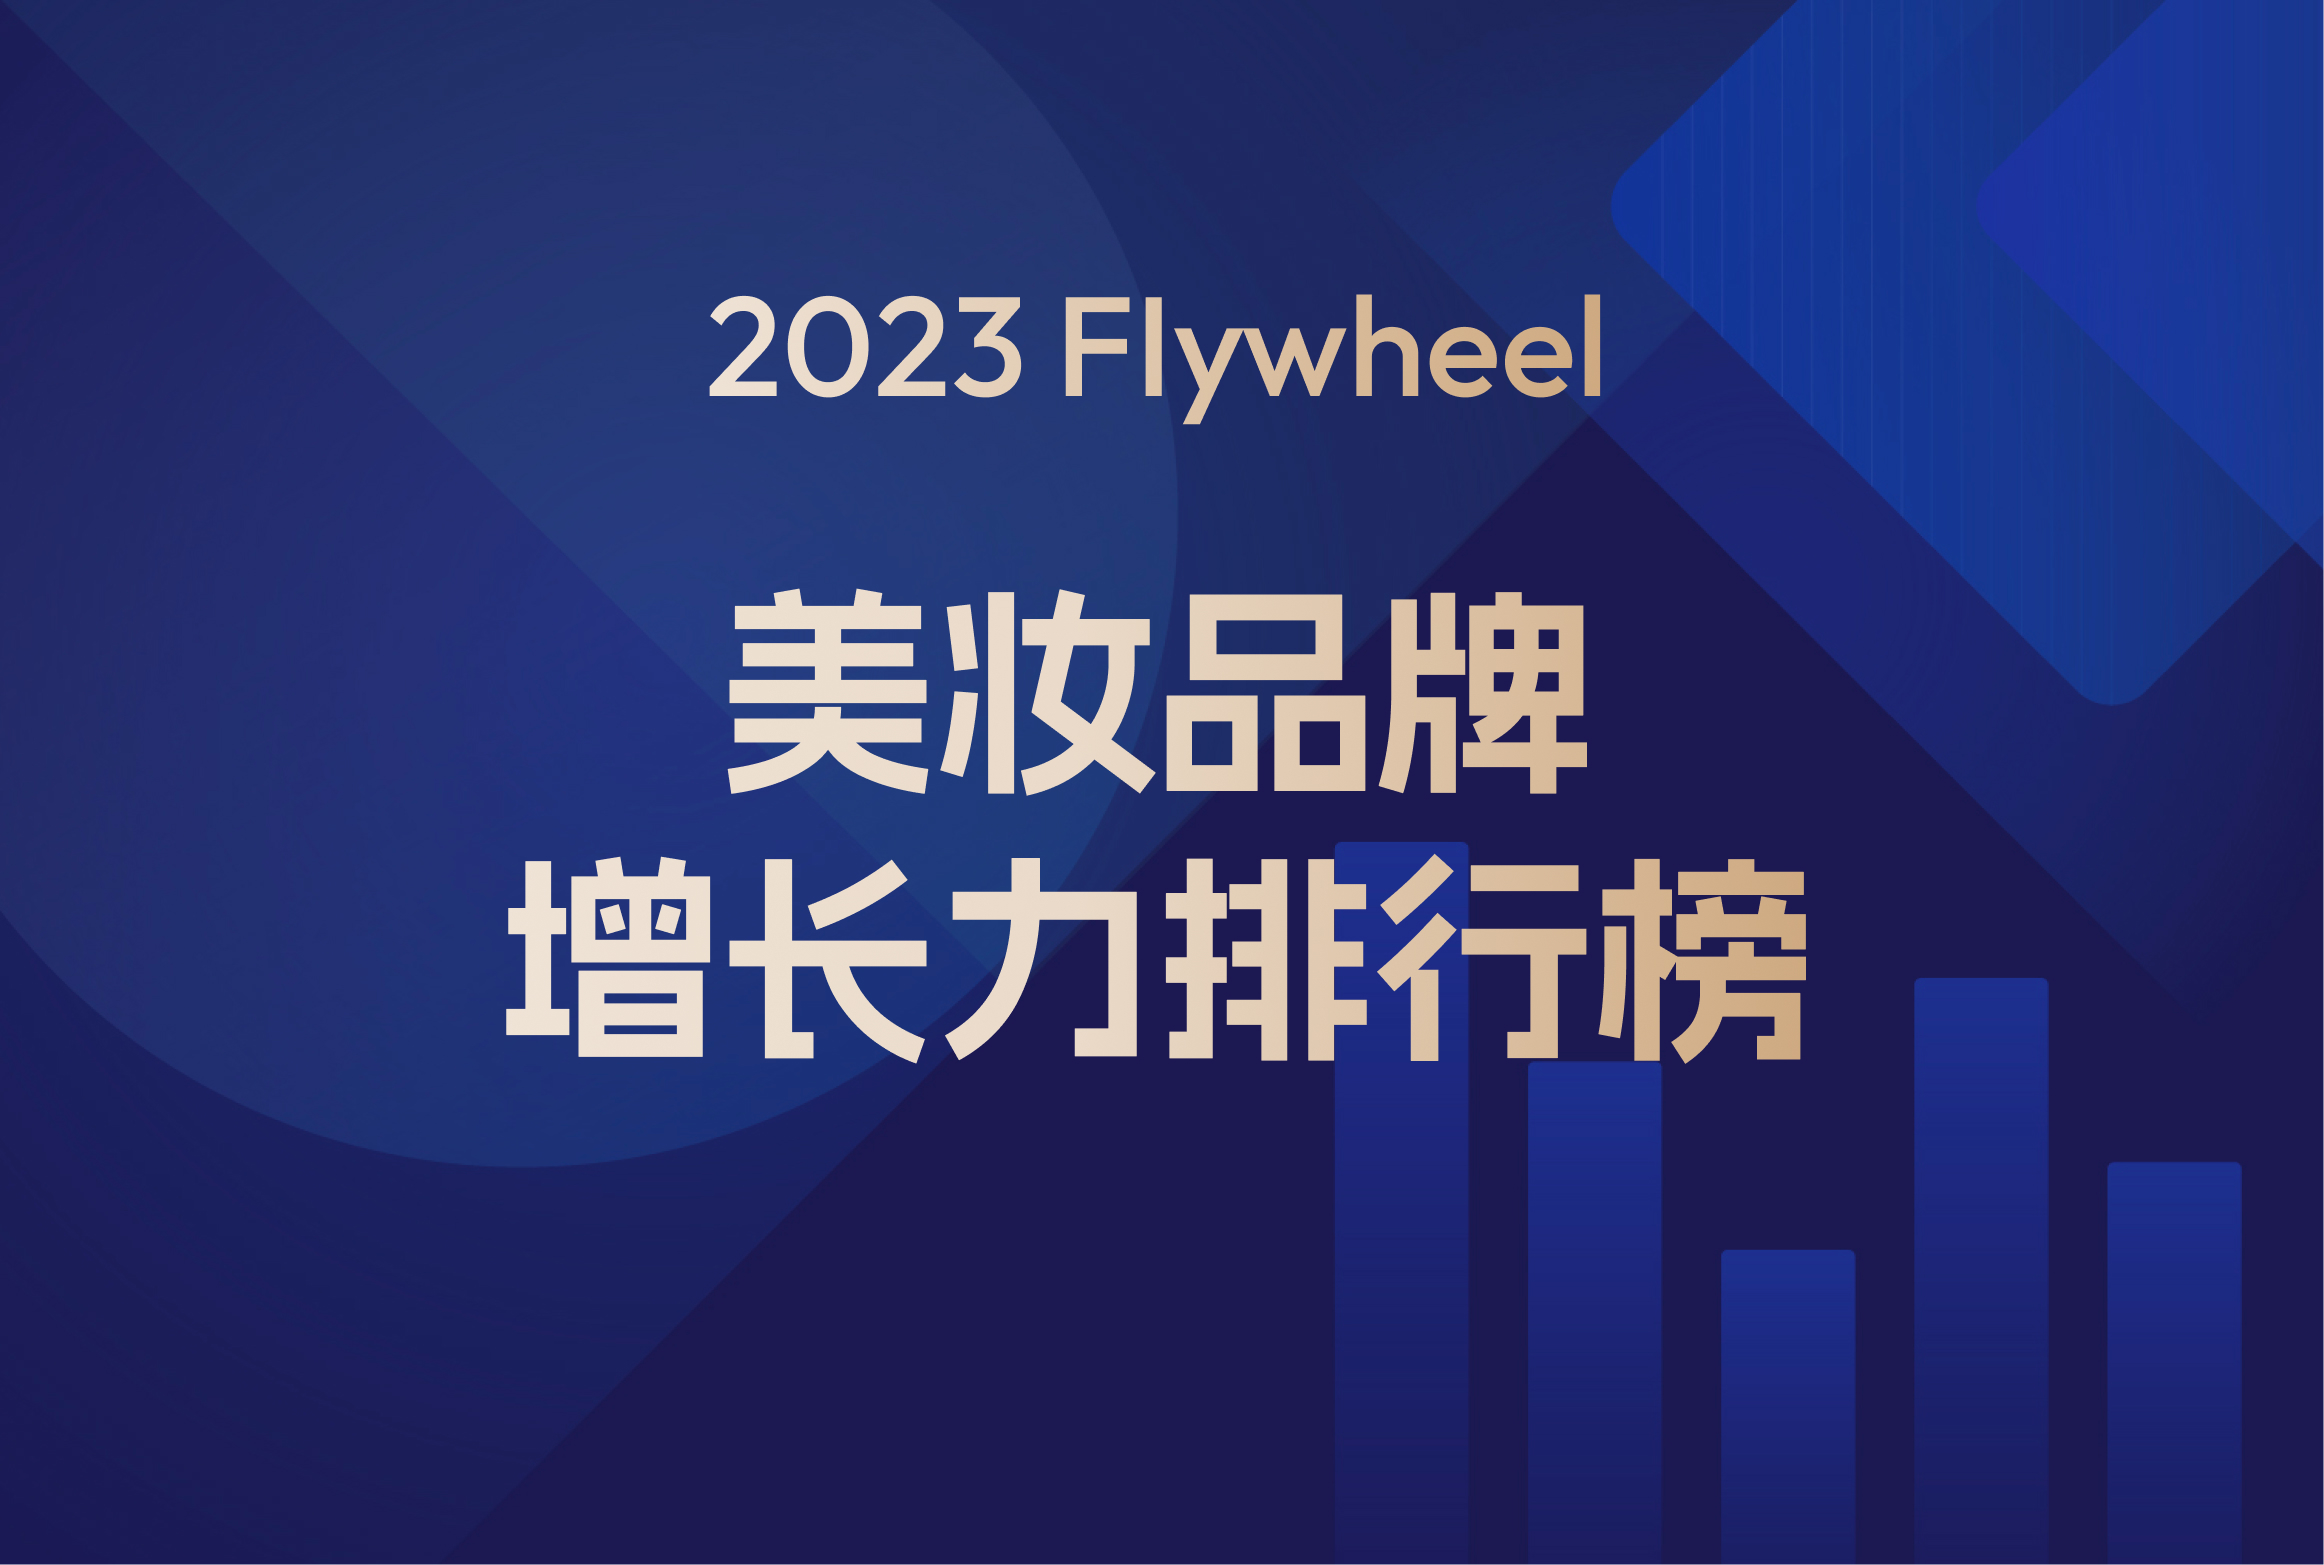 2023年Flywheel飞未美妆品牌增长力排行榜